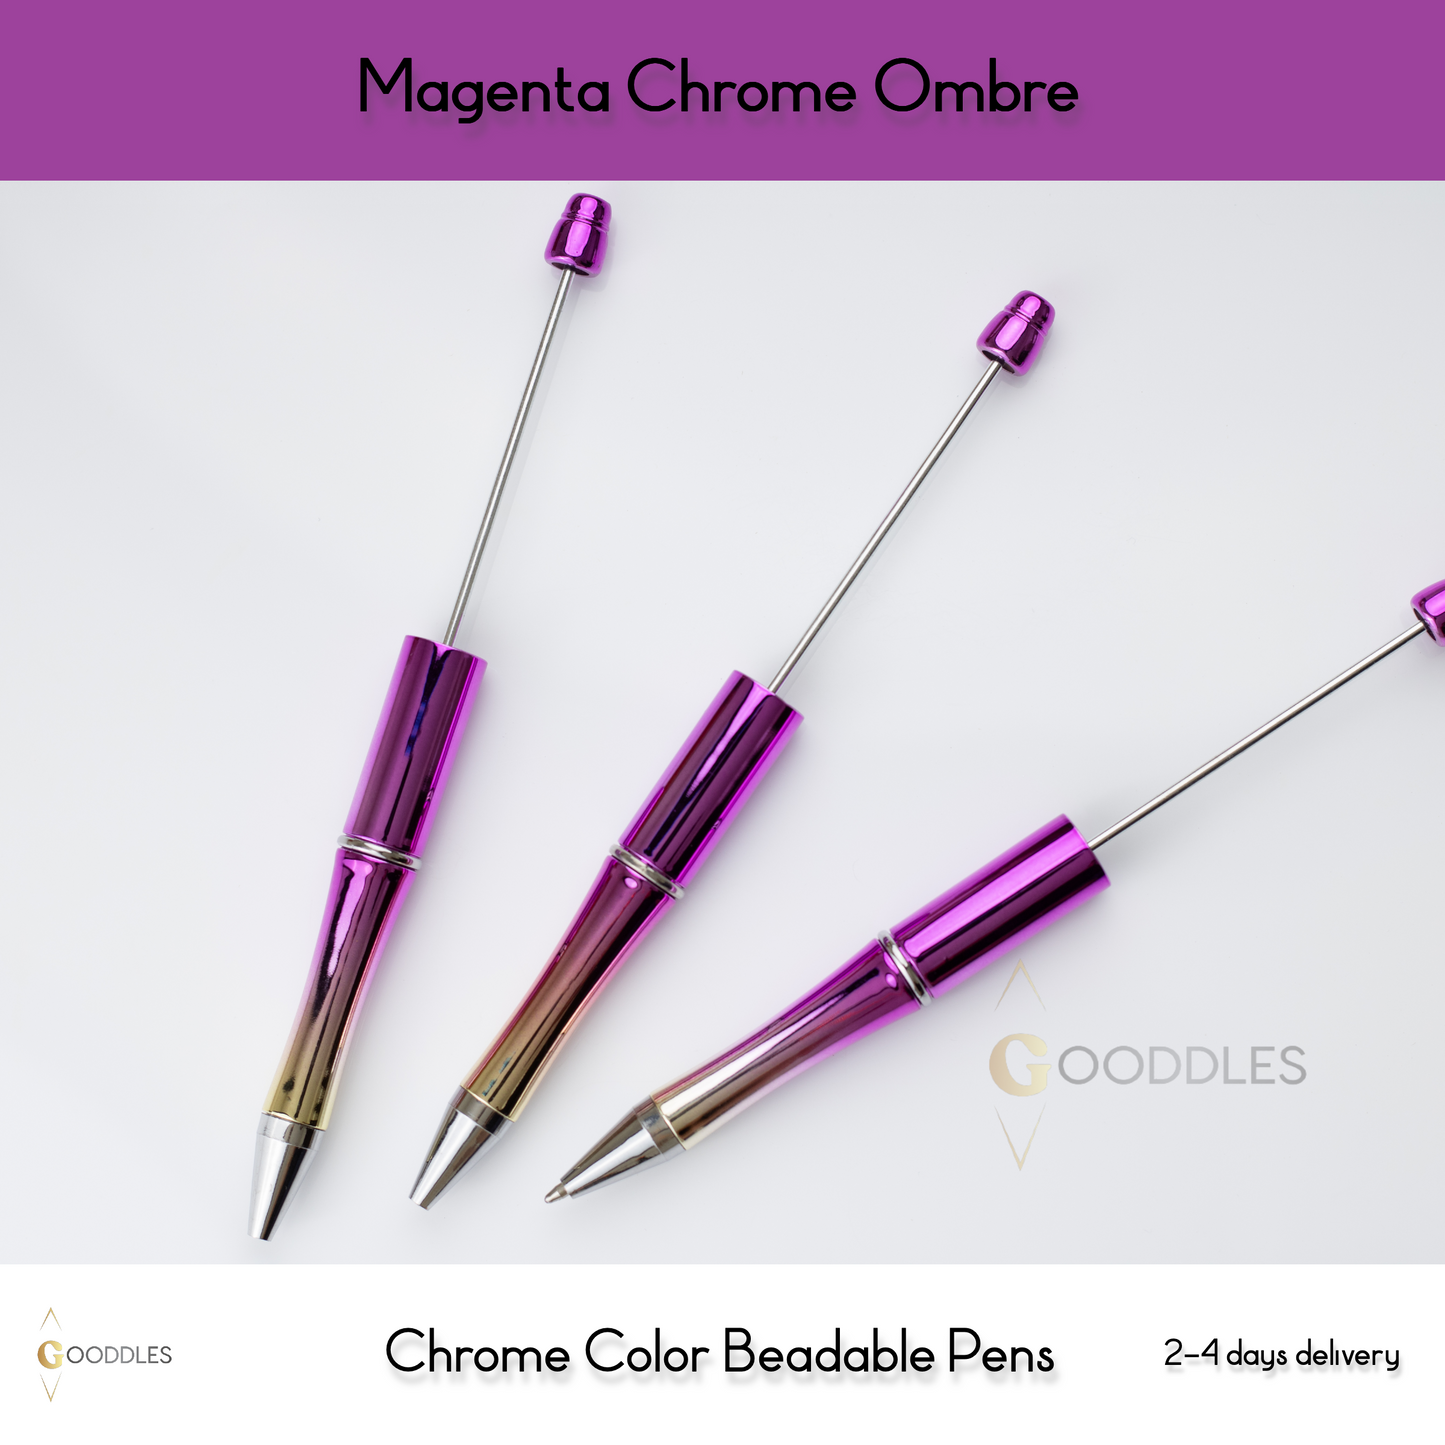 Magenta Chrome Ombre Pens